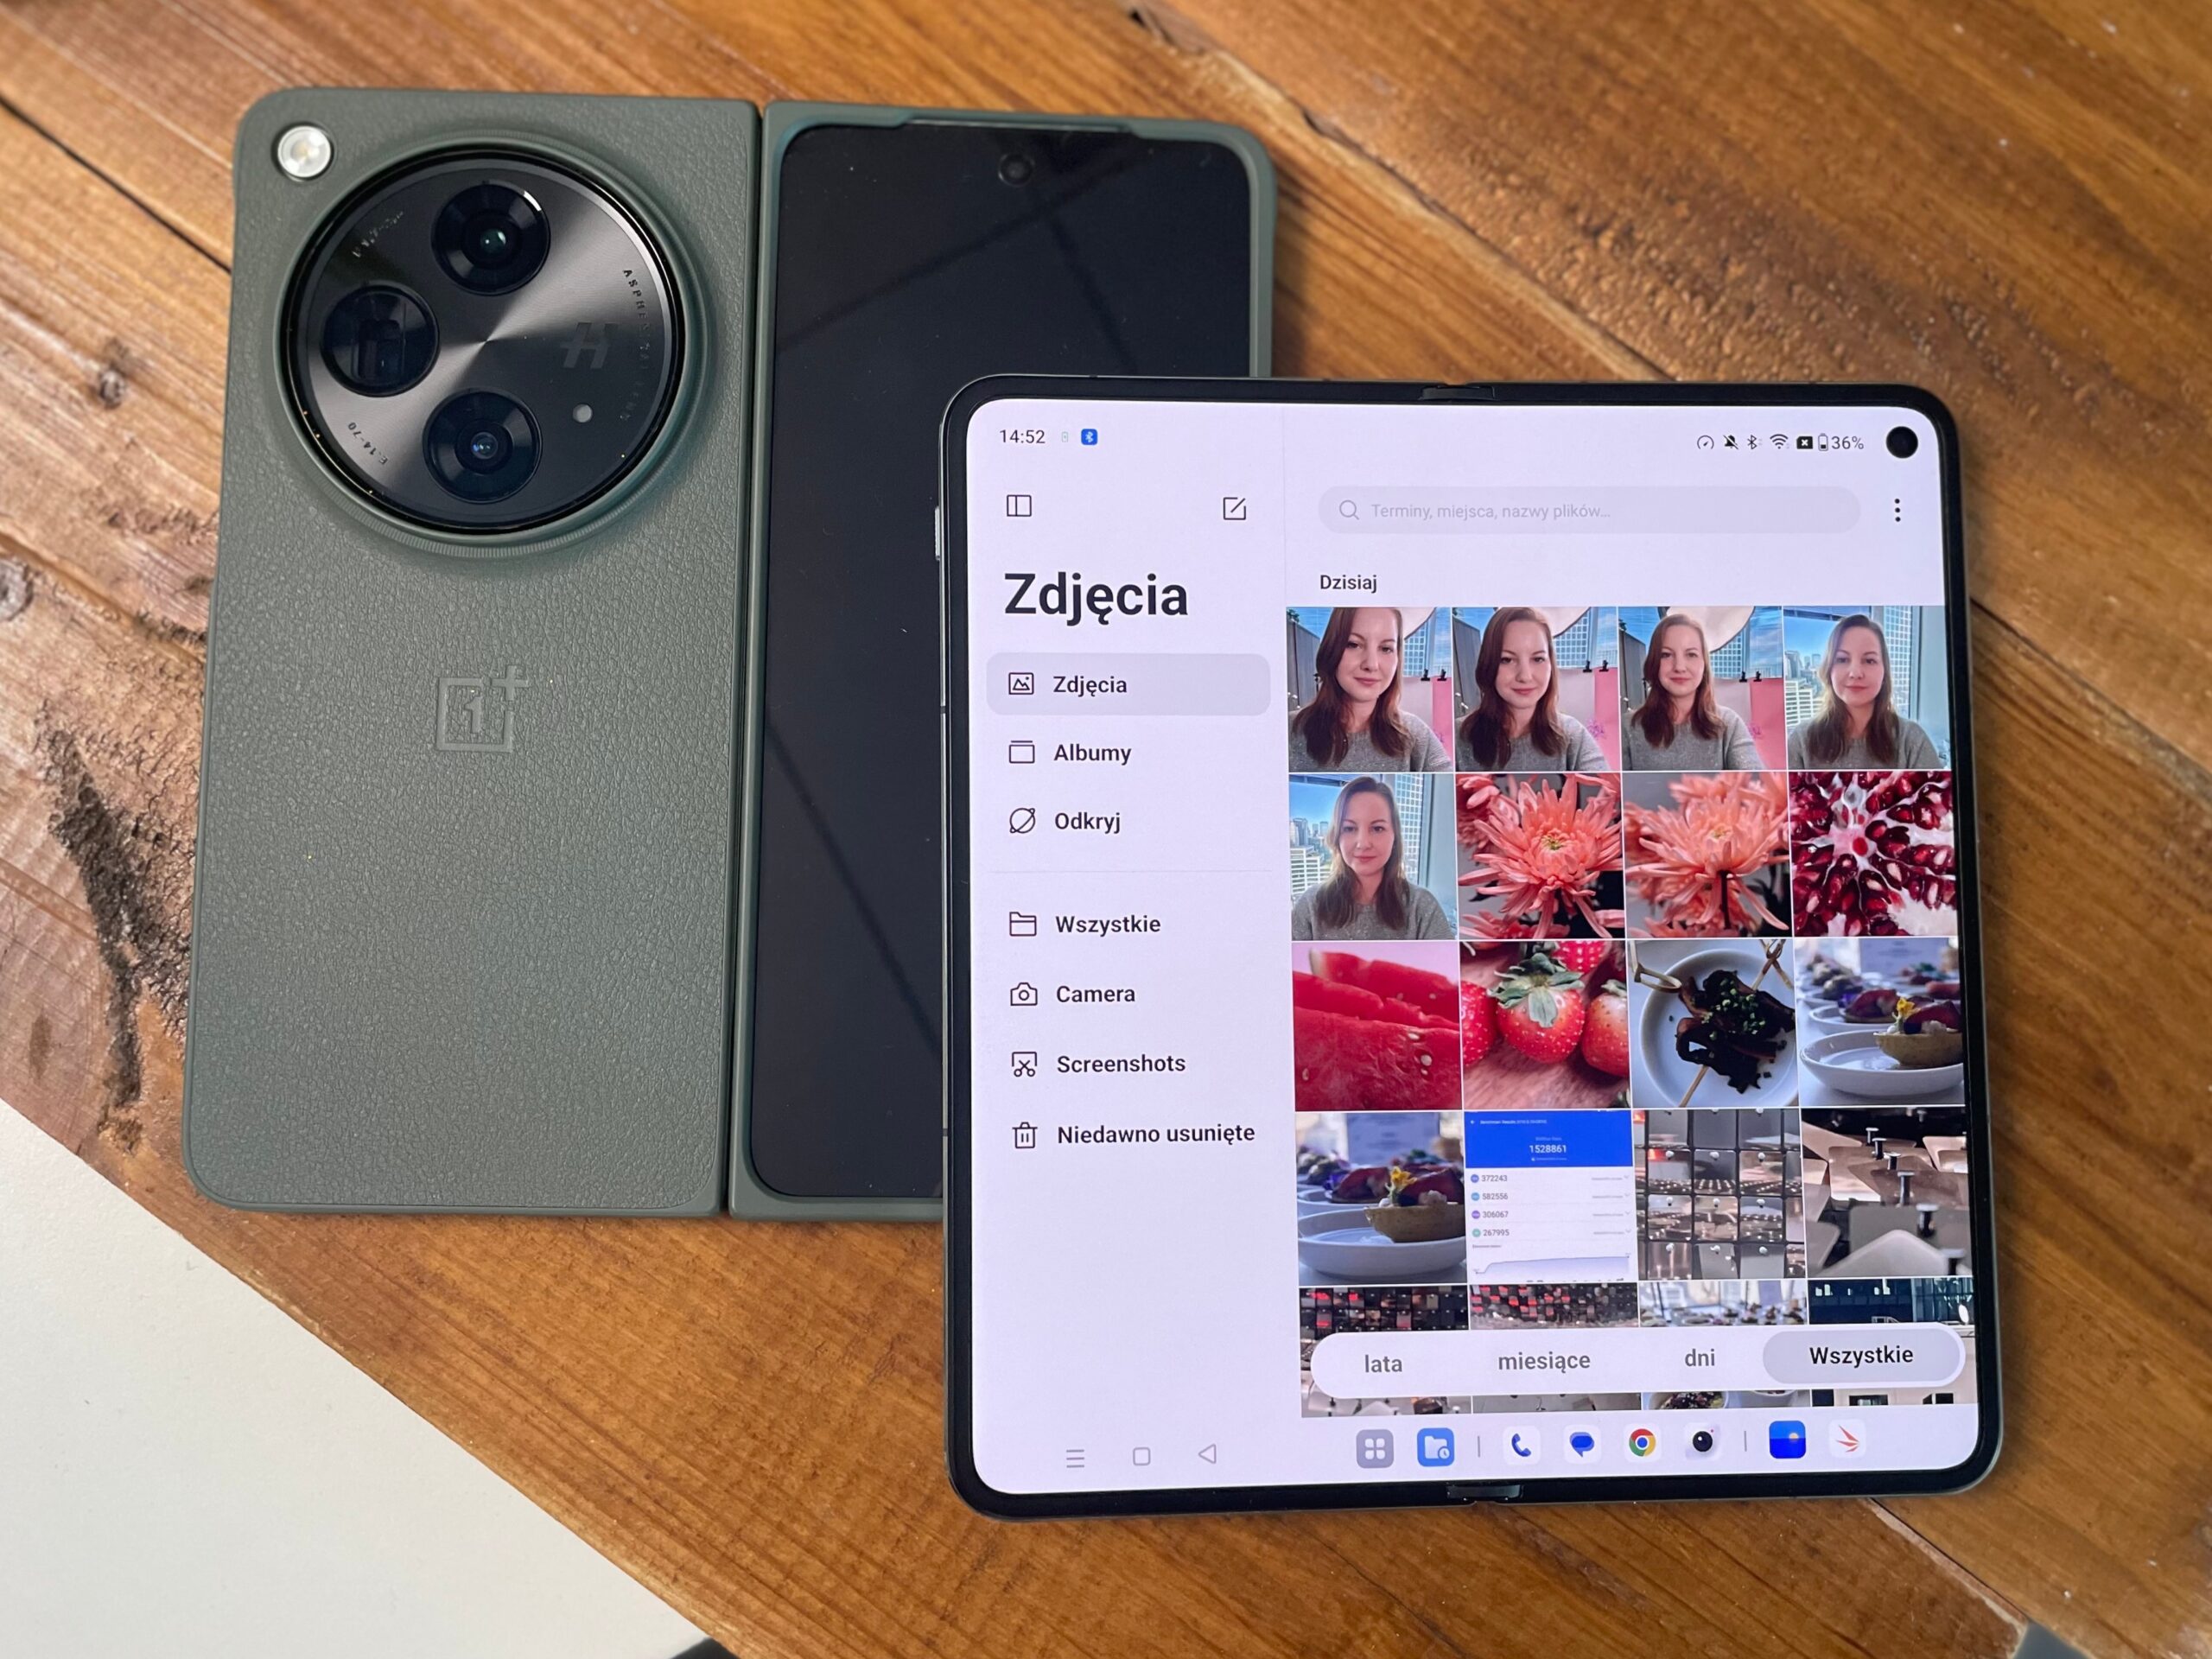 Zdjęcie przedstawia zielony smartfon z aparatem o trzech obiektywach i OnePlus Open z otwartą aplikacją galerii wyświetlającą zdjęcia, oba urządzenia leżą na drewnianym blacie.